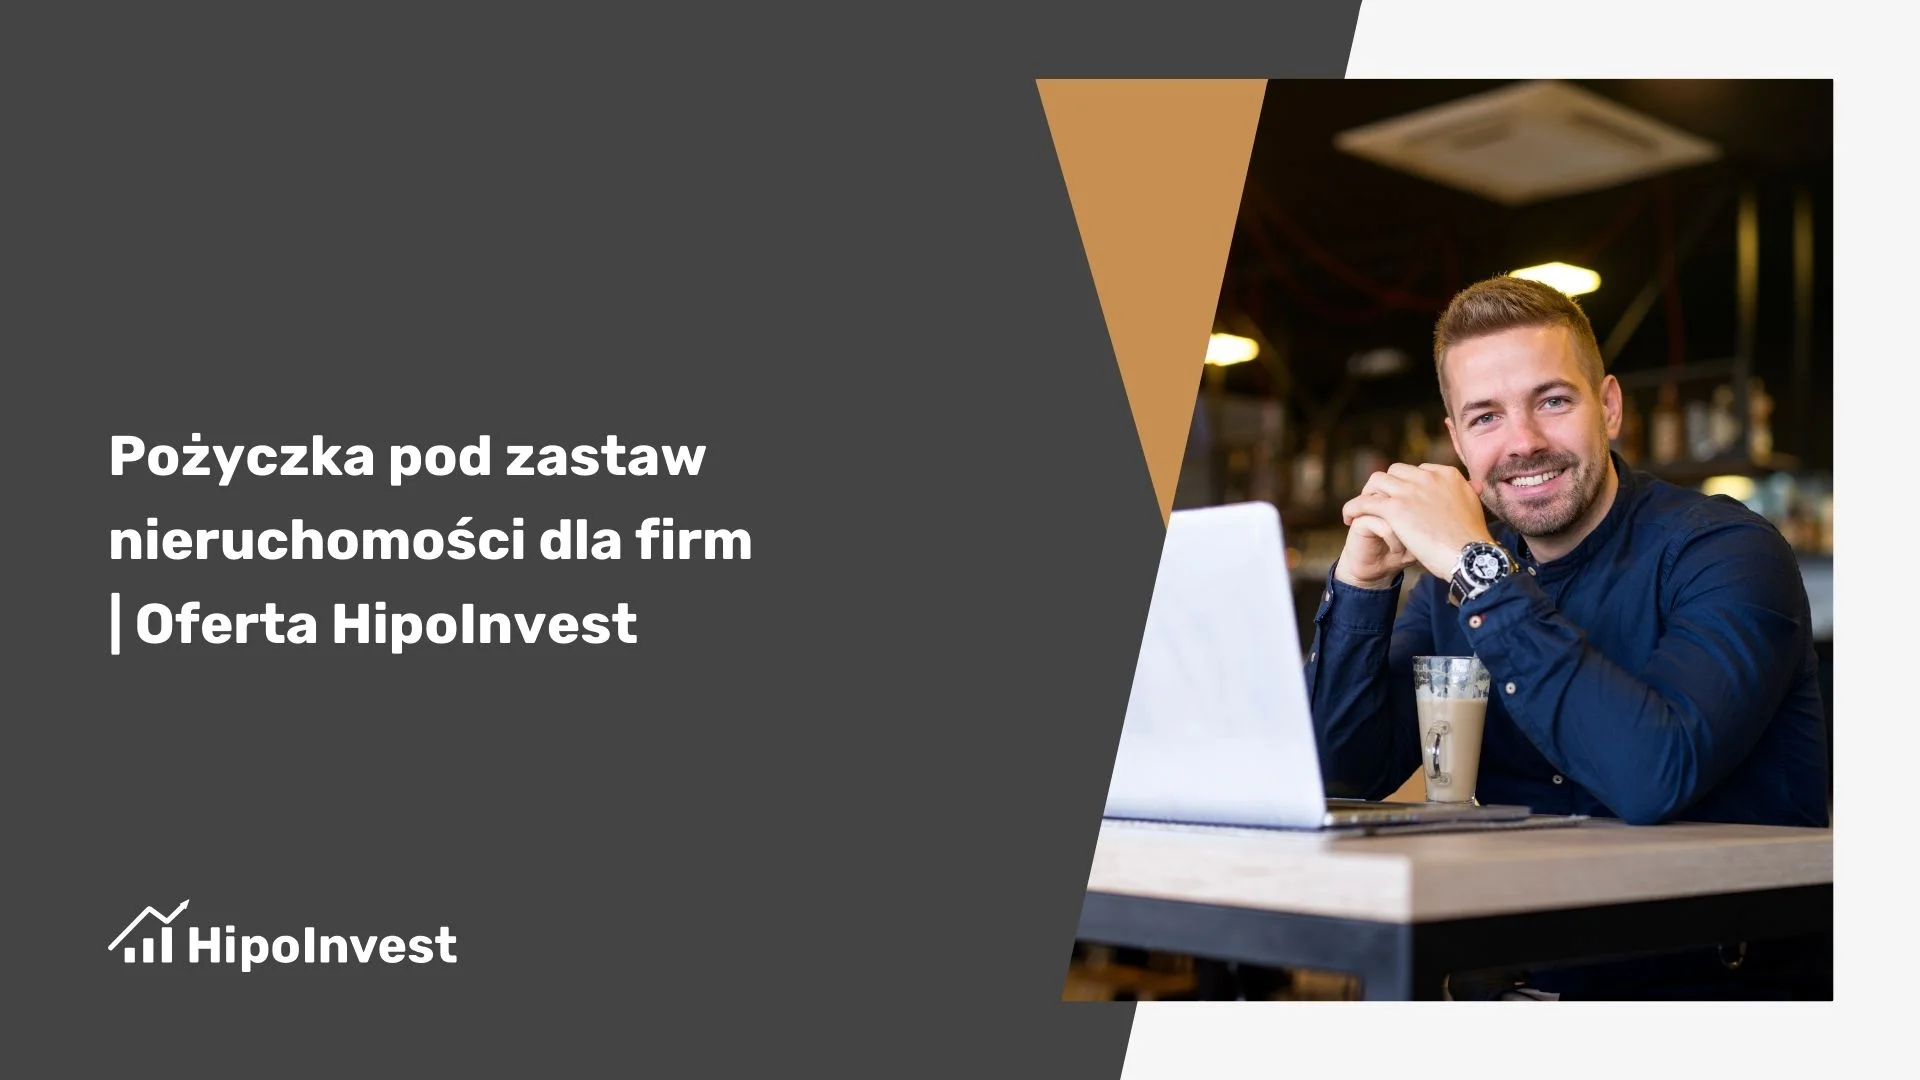 Pożyczki pod zastaw Wrocław - oferta HipoInvest